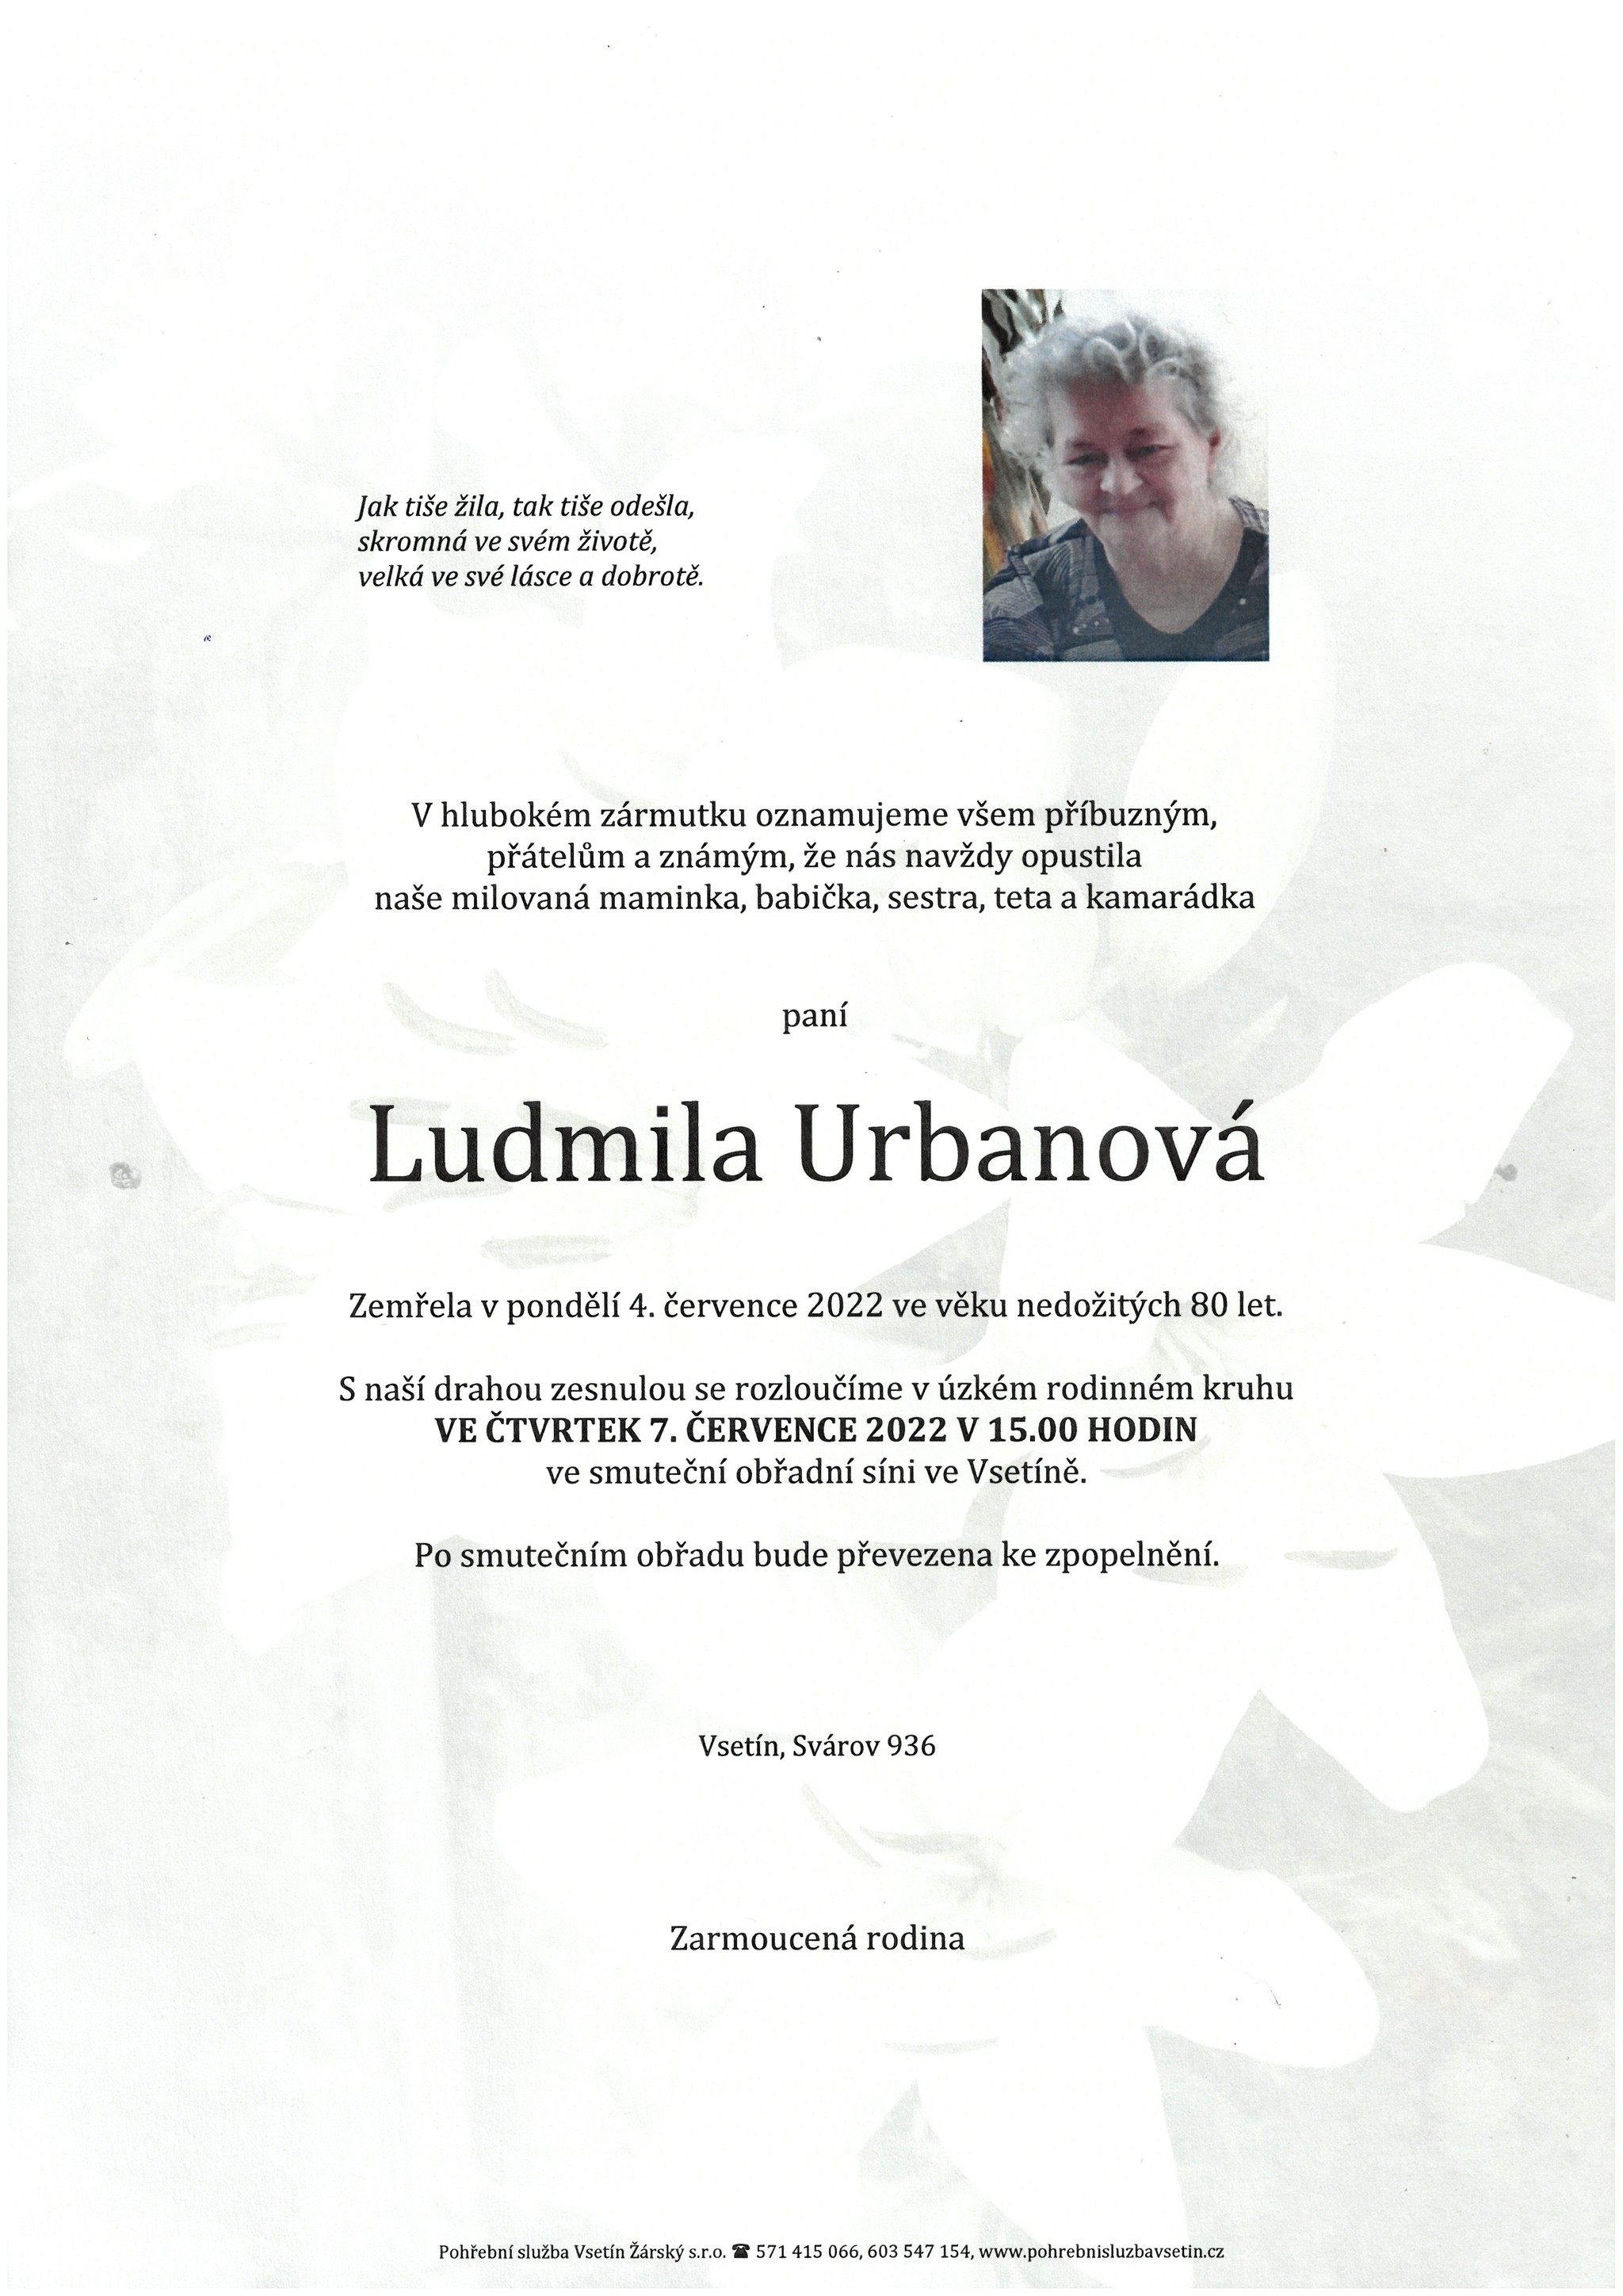 Ludmila Urbanová